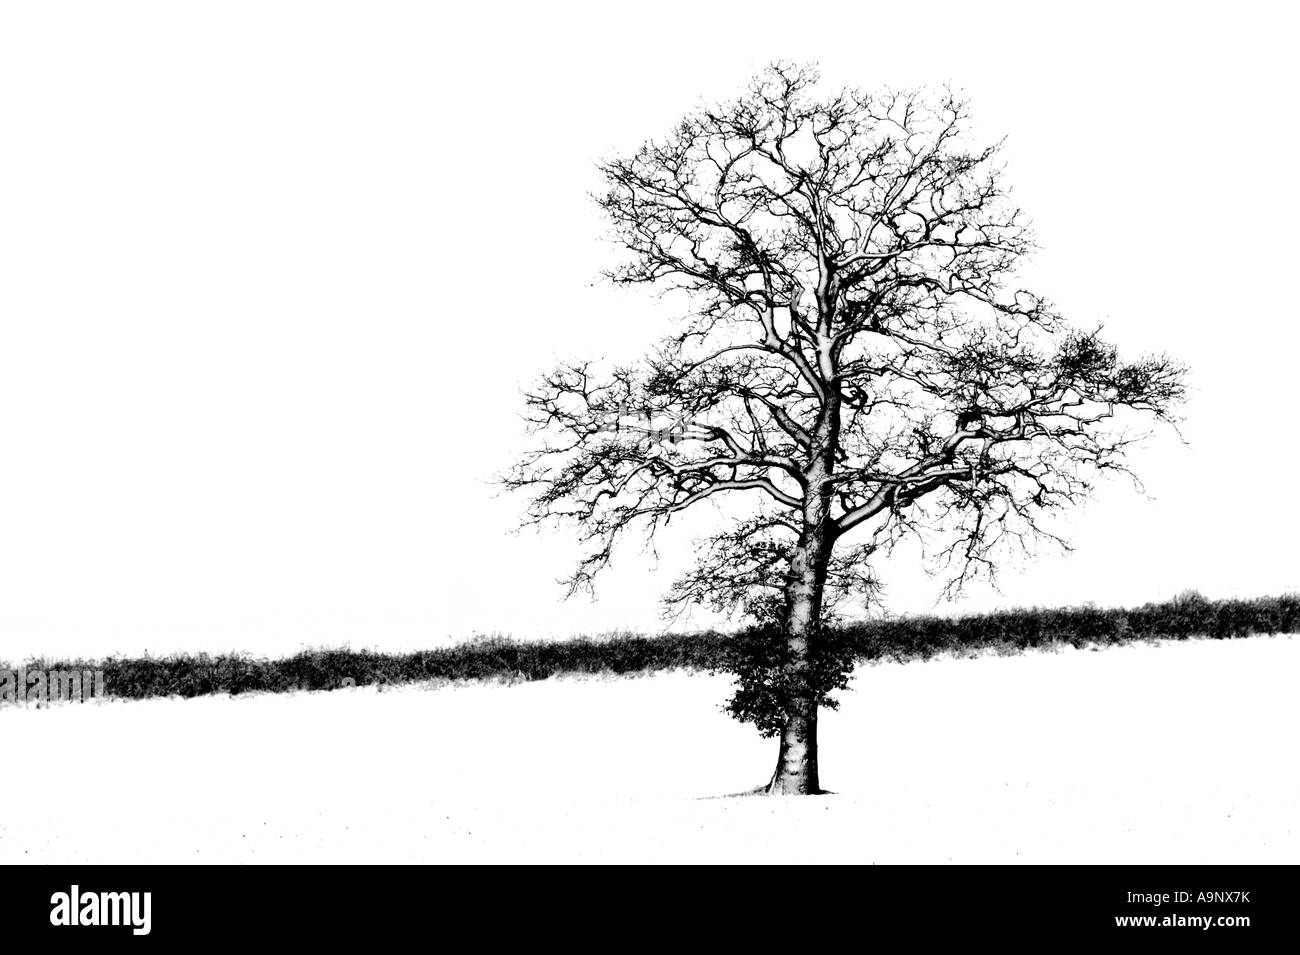 Une photographie en noir et blanc d'un chêne debout dans le champ couvert de neige au cours de blizzard Banque D'Images